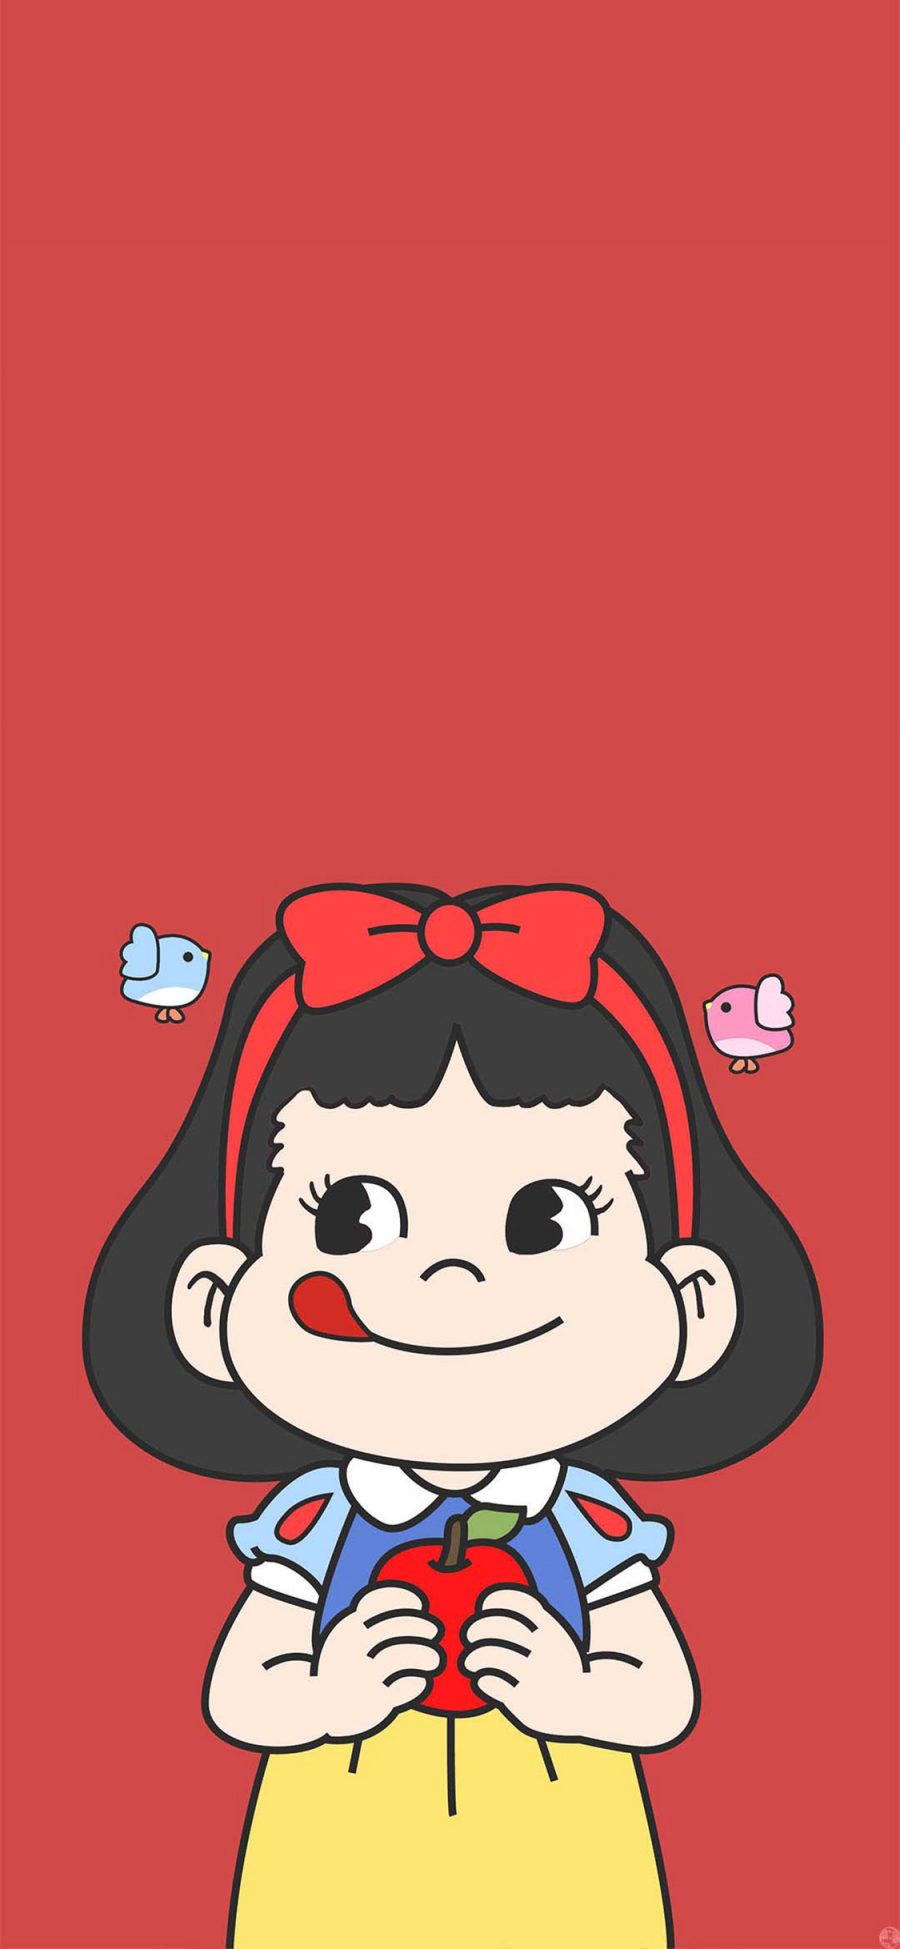 [2436×1125]不二家 甜妞 红色 白雪公主 可爱 卡通 苹果手机动漫壁纸图片